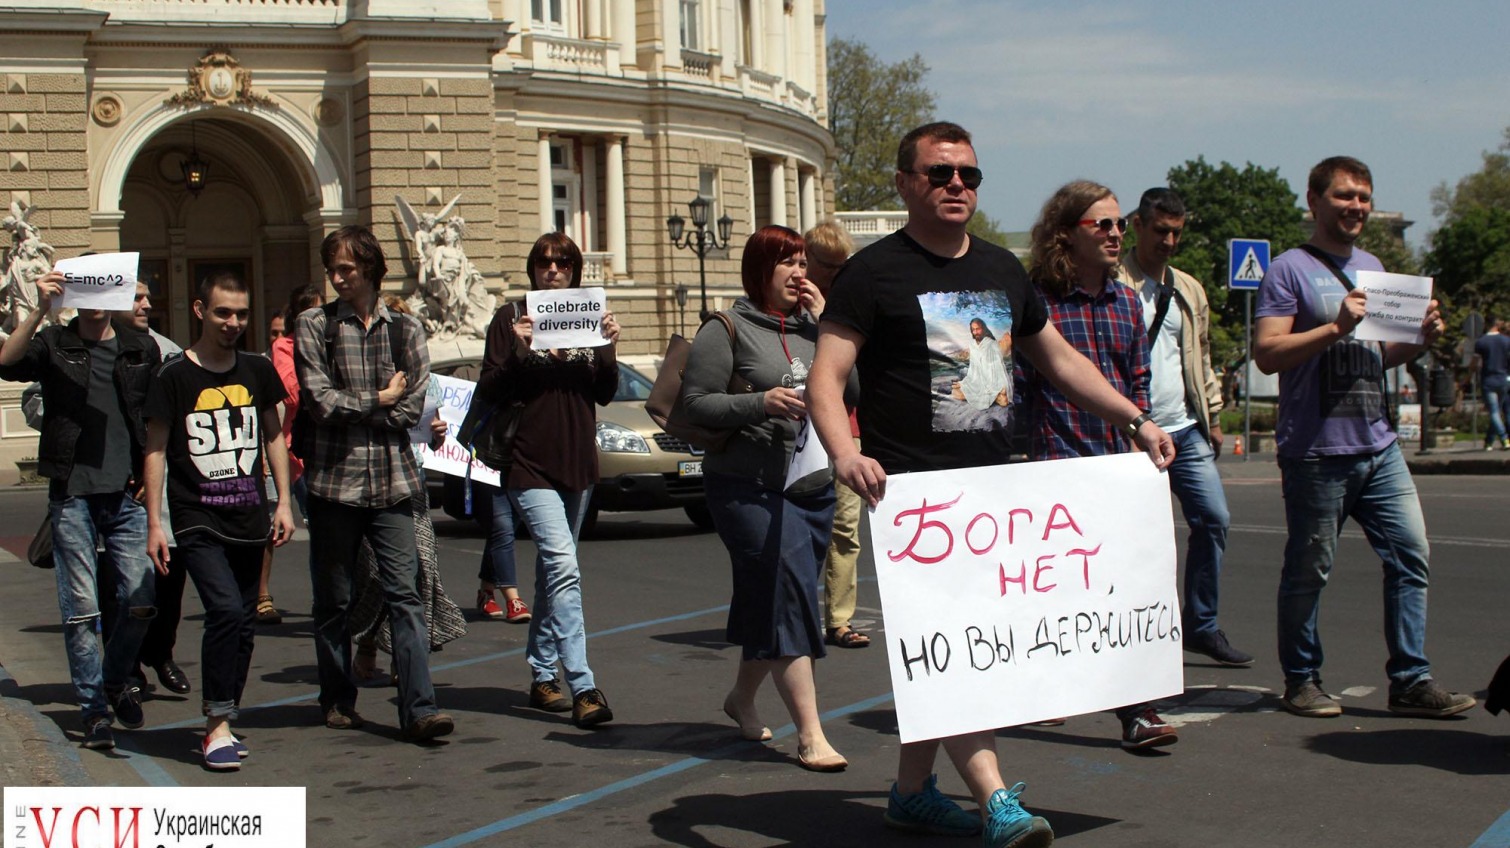 “Труханова на мощи!”: на Дерибасовской встретились участники маршей агностиков и монстрантов (фото, видео) «фото»